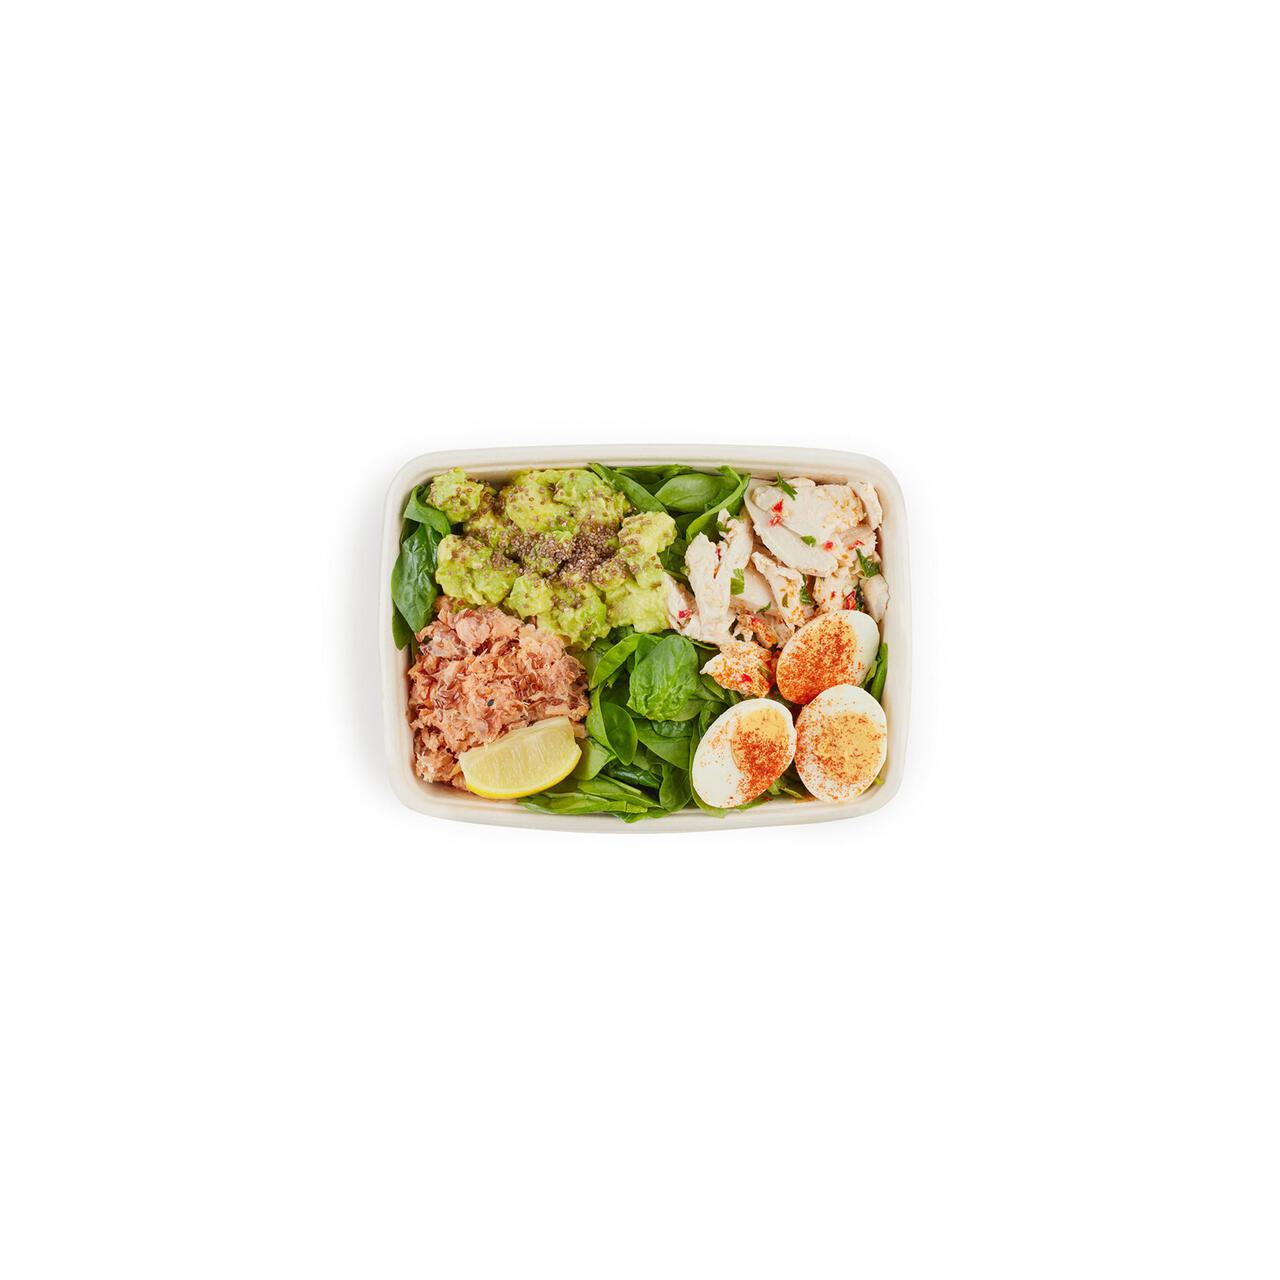 Crussh Protein Boost Salad Box 337g